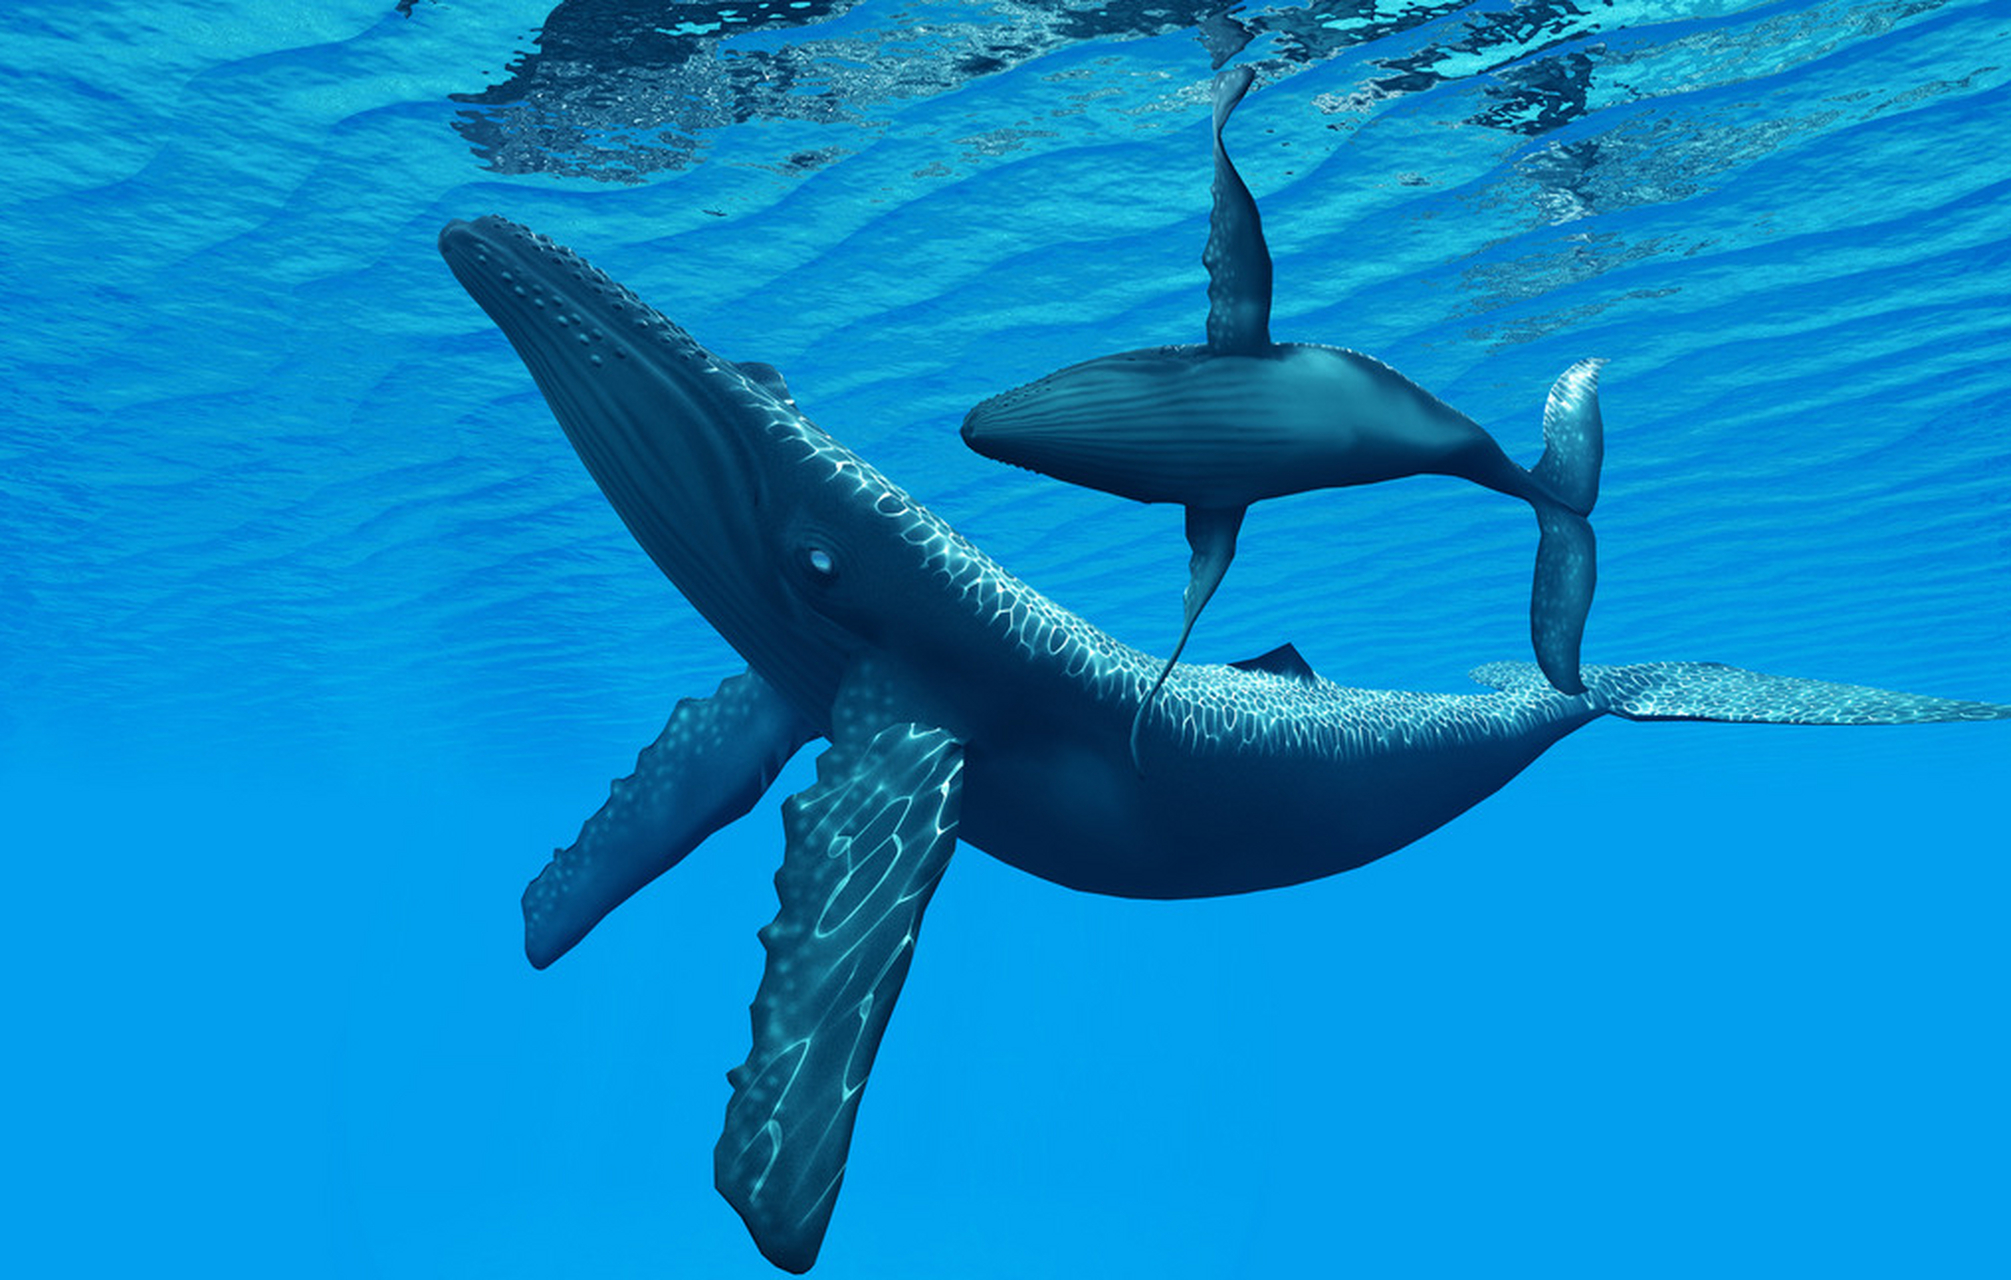 蓝鲸拉屎的时候,一次性可以排出两吨左右的粪便,如果遇上它们拉肚子的